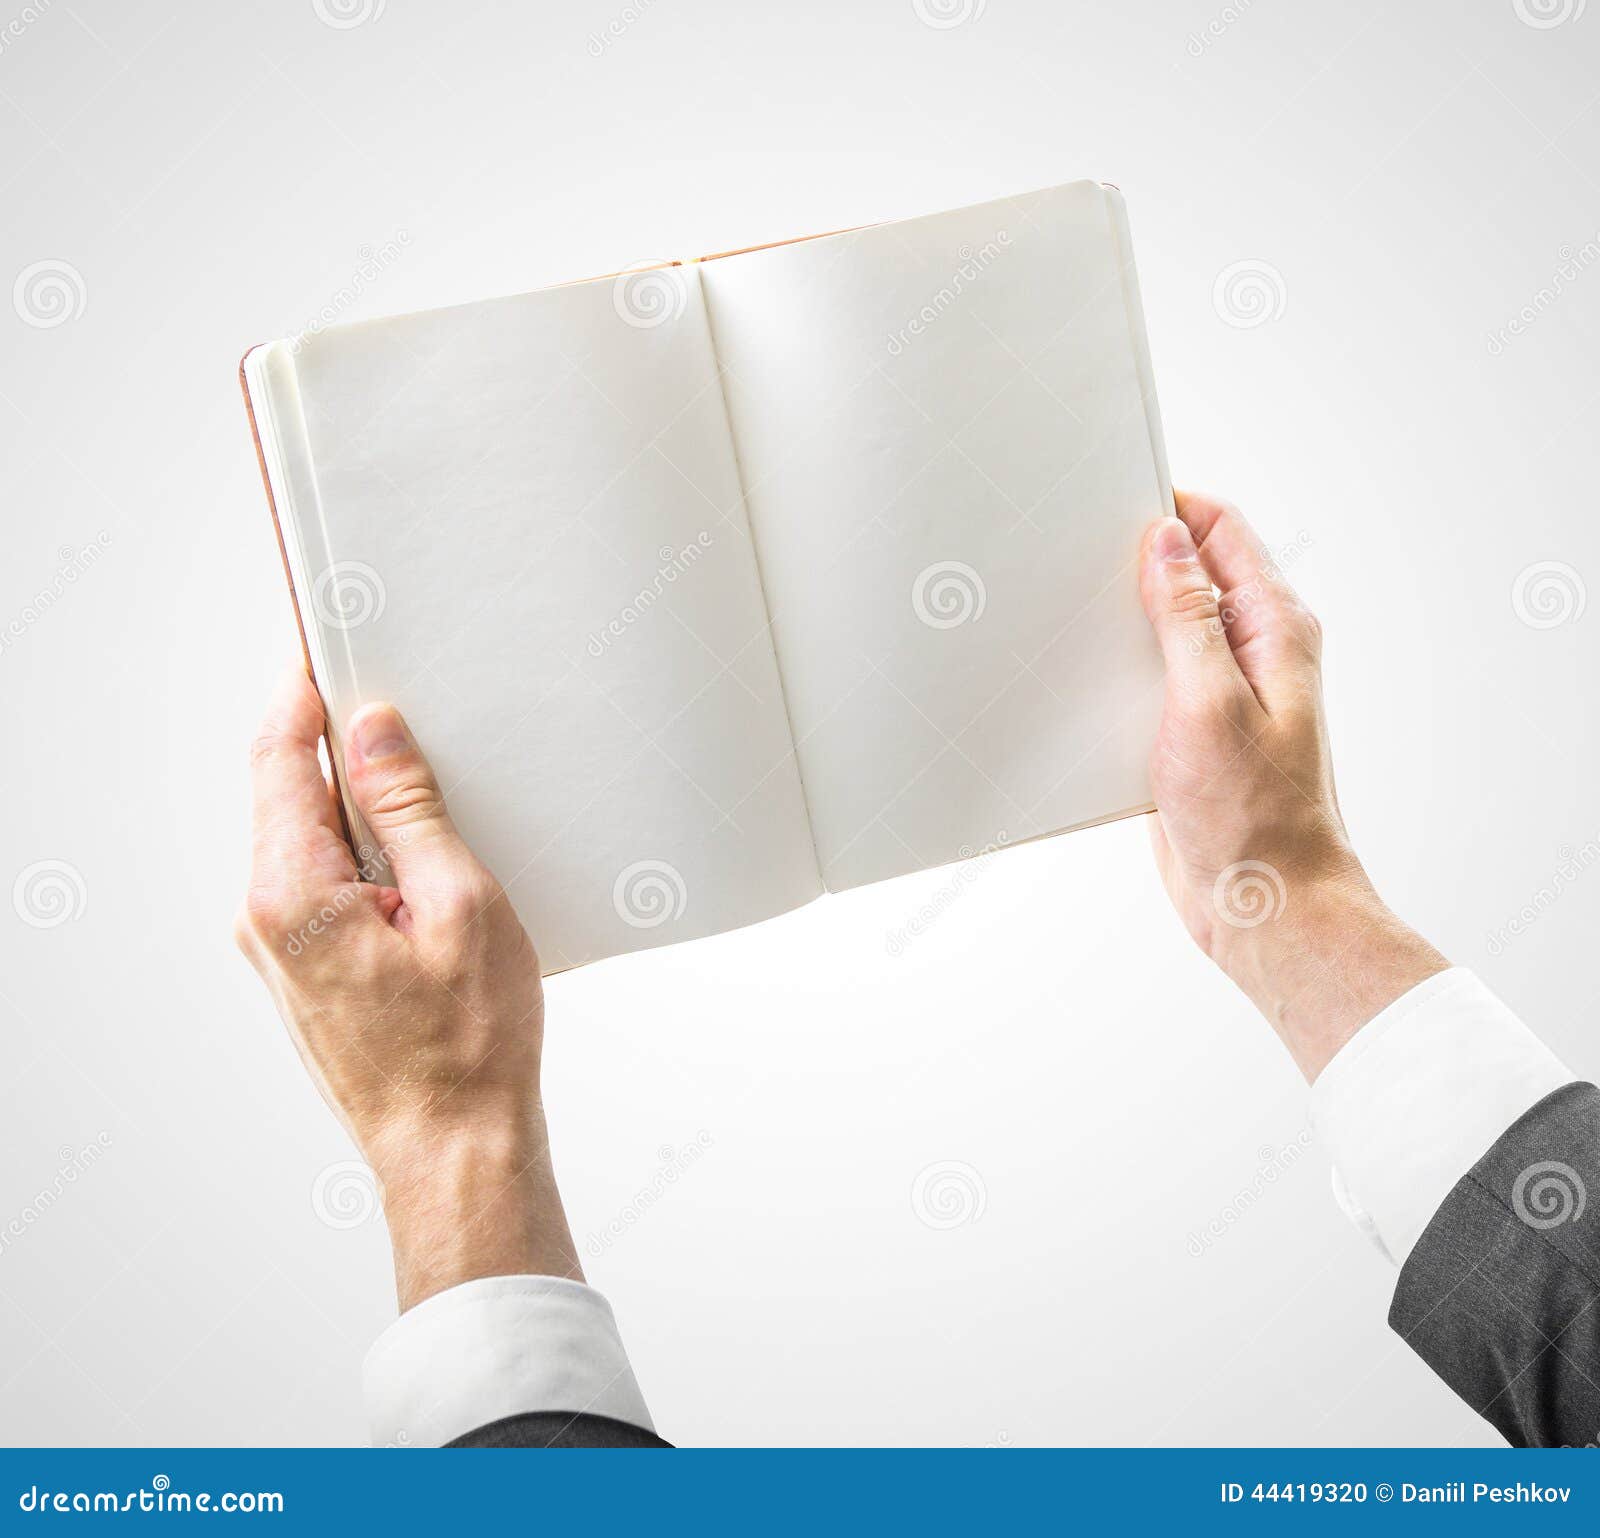 Раскрытая книга в руках. Человек держит книгу в руках. Книга в руках. Открытая книга в руках. Книжка открытая в руках.